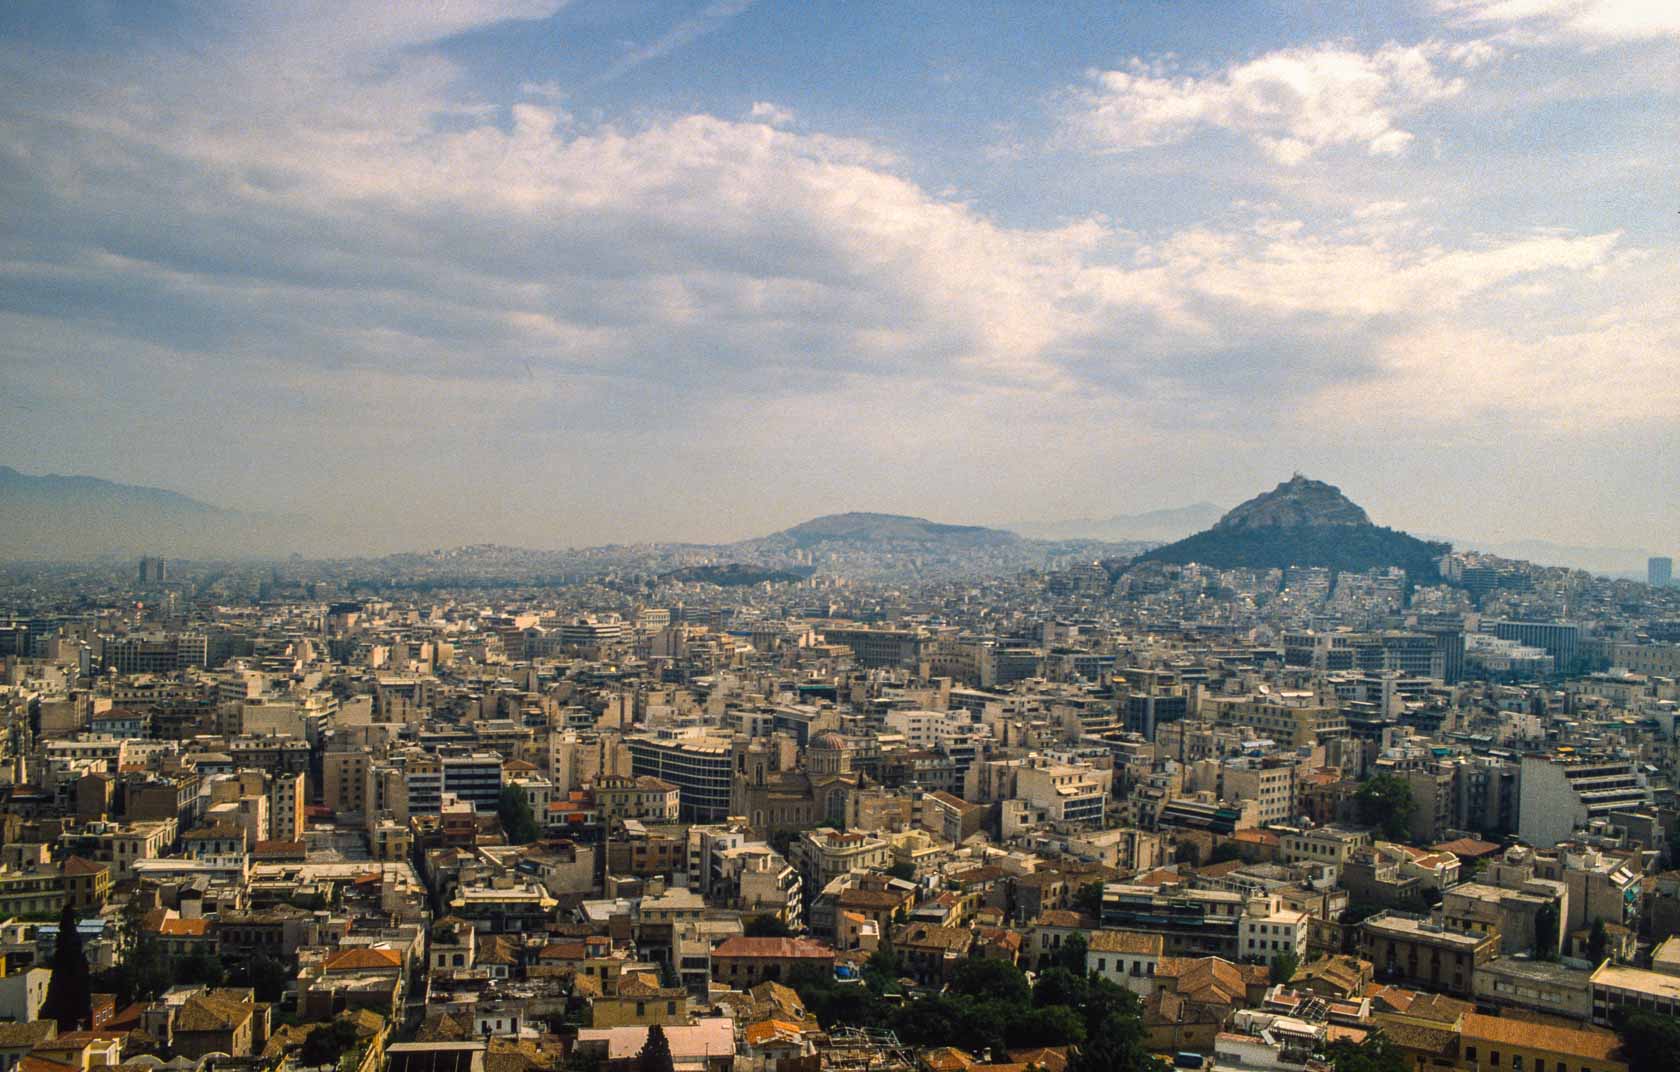 <span style="font-family: Verdana; font-size: 16px; color:">Uitzicht over Athene vanaf de Acropolis</span>